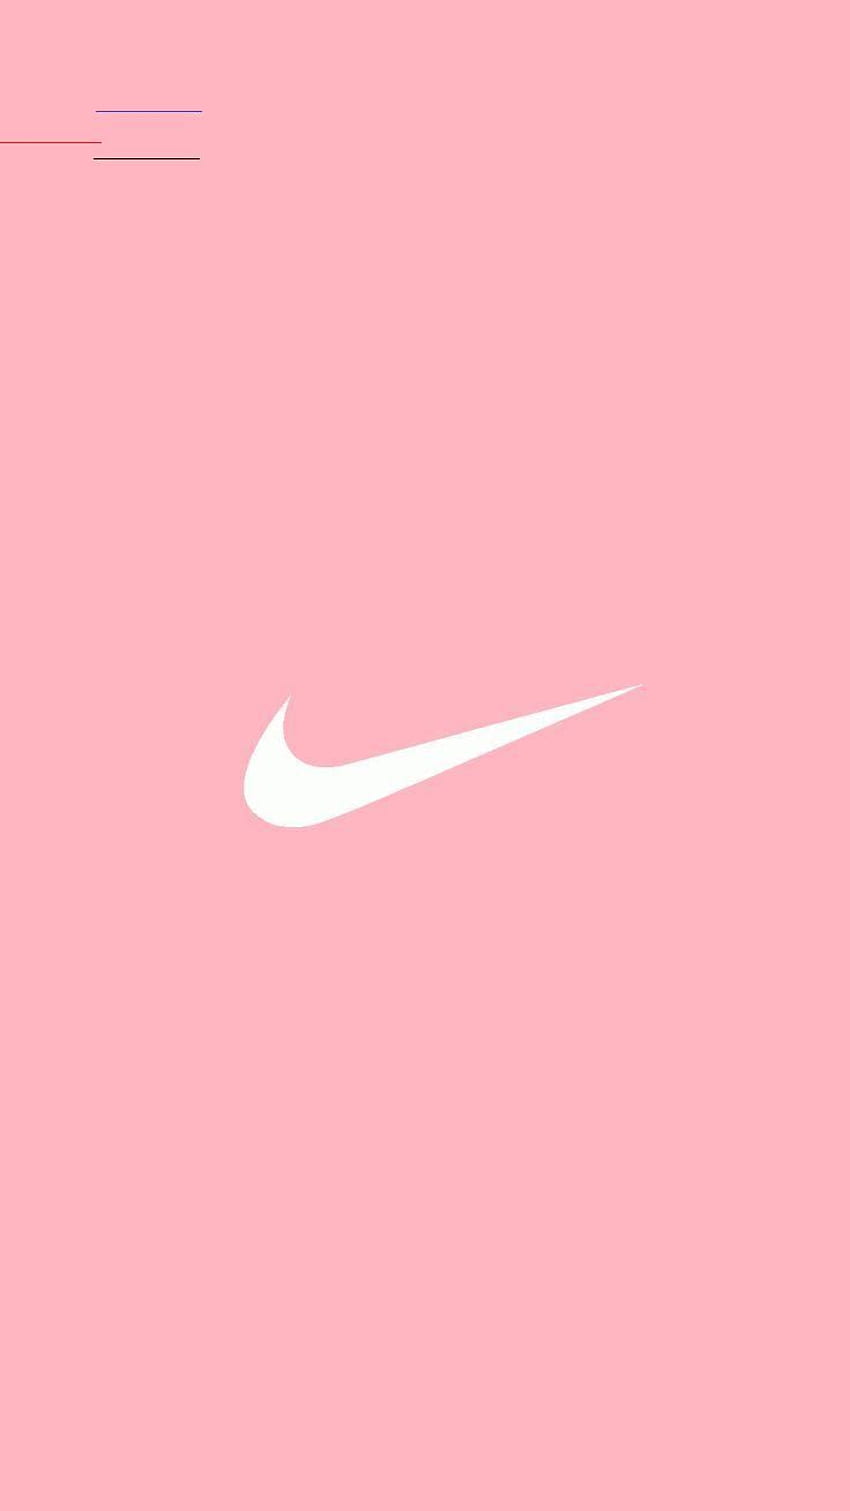 Một sắc hồng nhẹ nhàng, tinh tế là những gì mà Pastel Pink Nike mang lại. Hãy để mình bị mê hoặc bởi những thiết kế độc đáo và đầy thời trang của Nike. Hình ảnh này sẽ khiến cho bạn muốn sở hữu ngay một đôi giày Nike trong bộ sưu tập của mình.